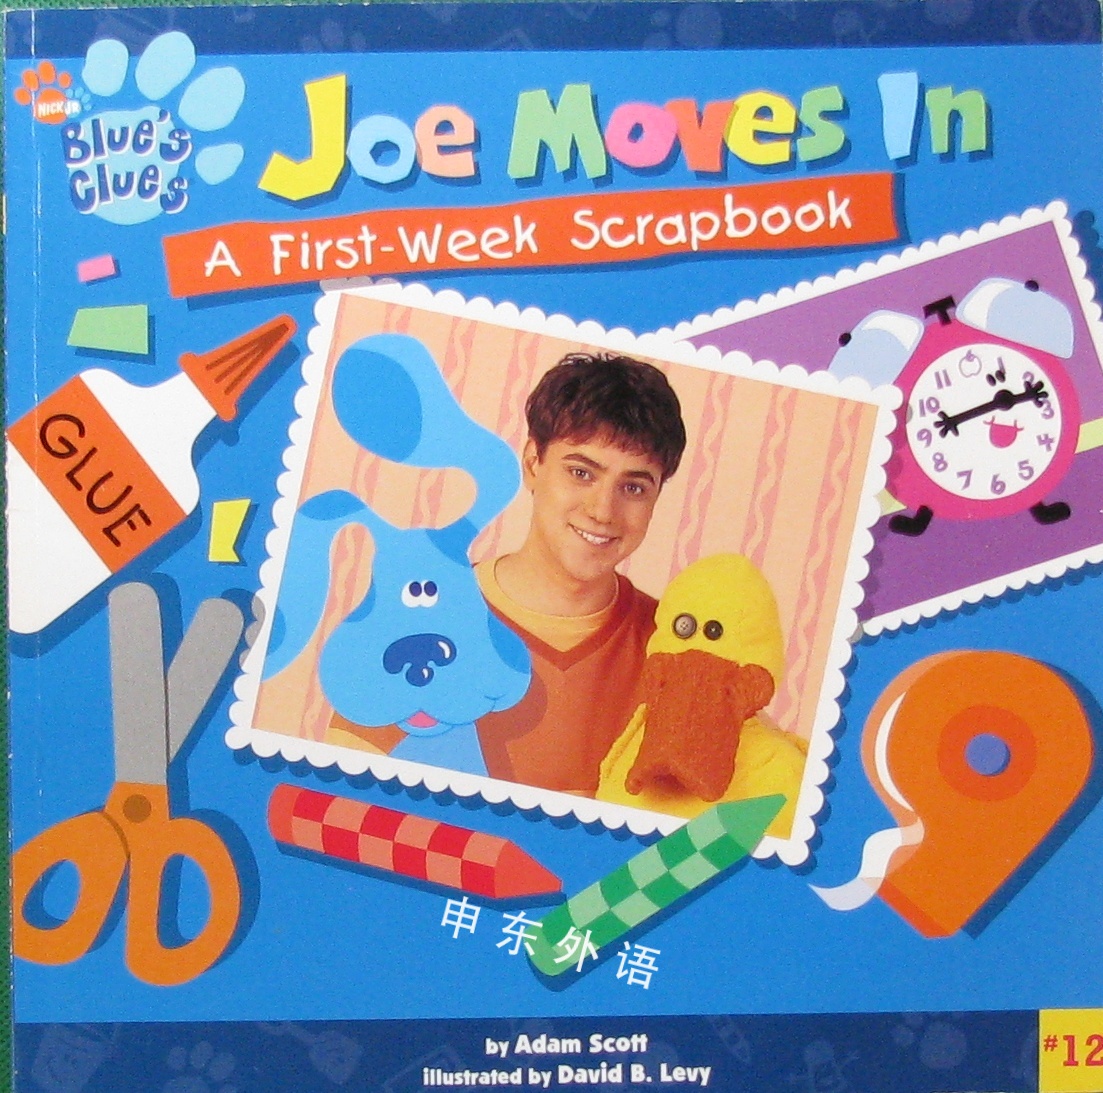 Joe Moves In Blues Clues 幽默 基本概念 儿童图书 进口图书 进口书 原版书 绘本书 英文 原版图书 儿童纸板书 外语图书 进口儿童书 原版儿童书